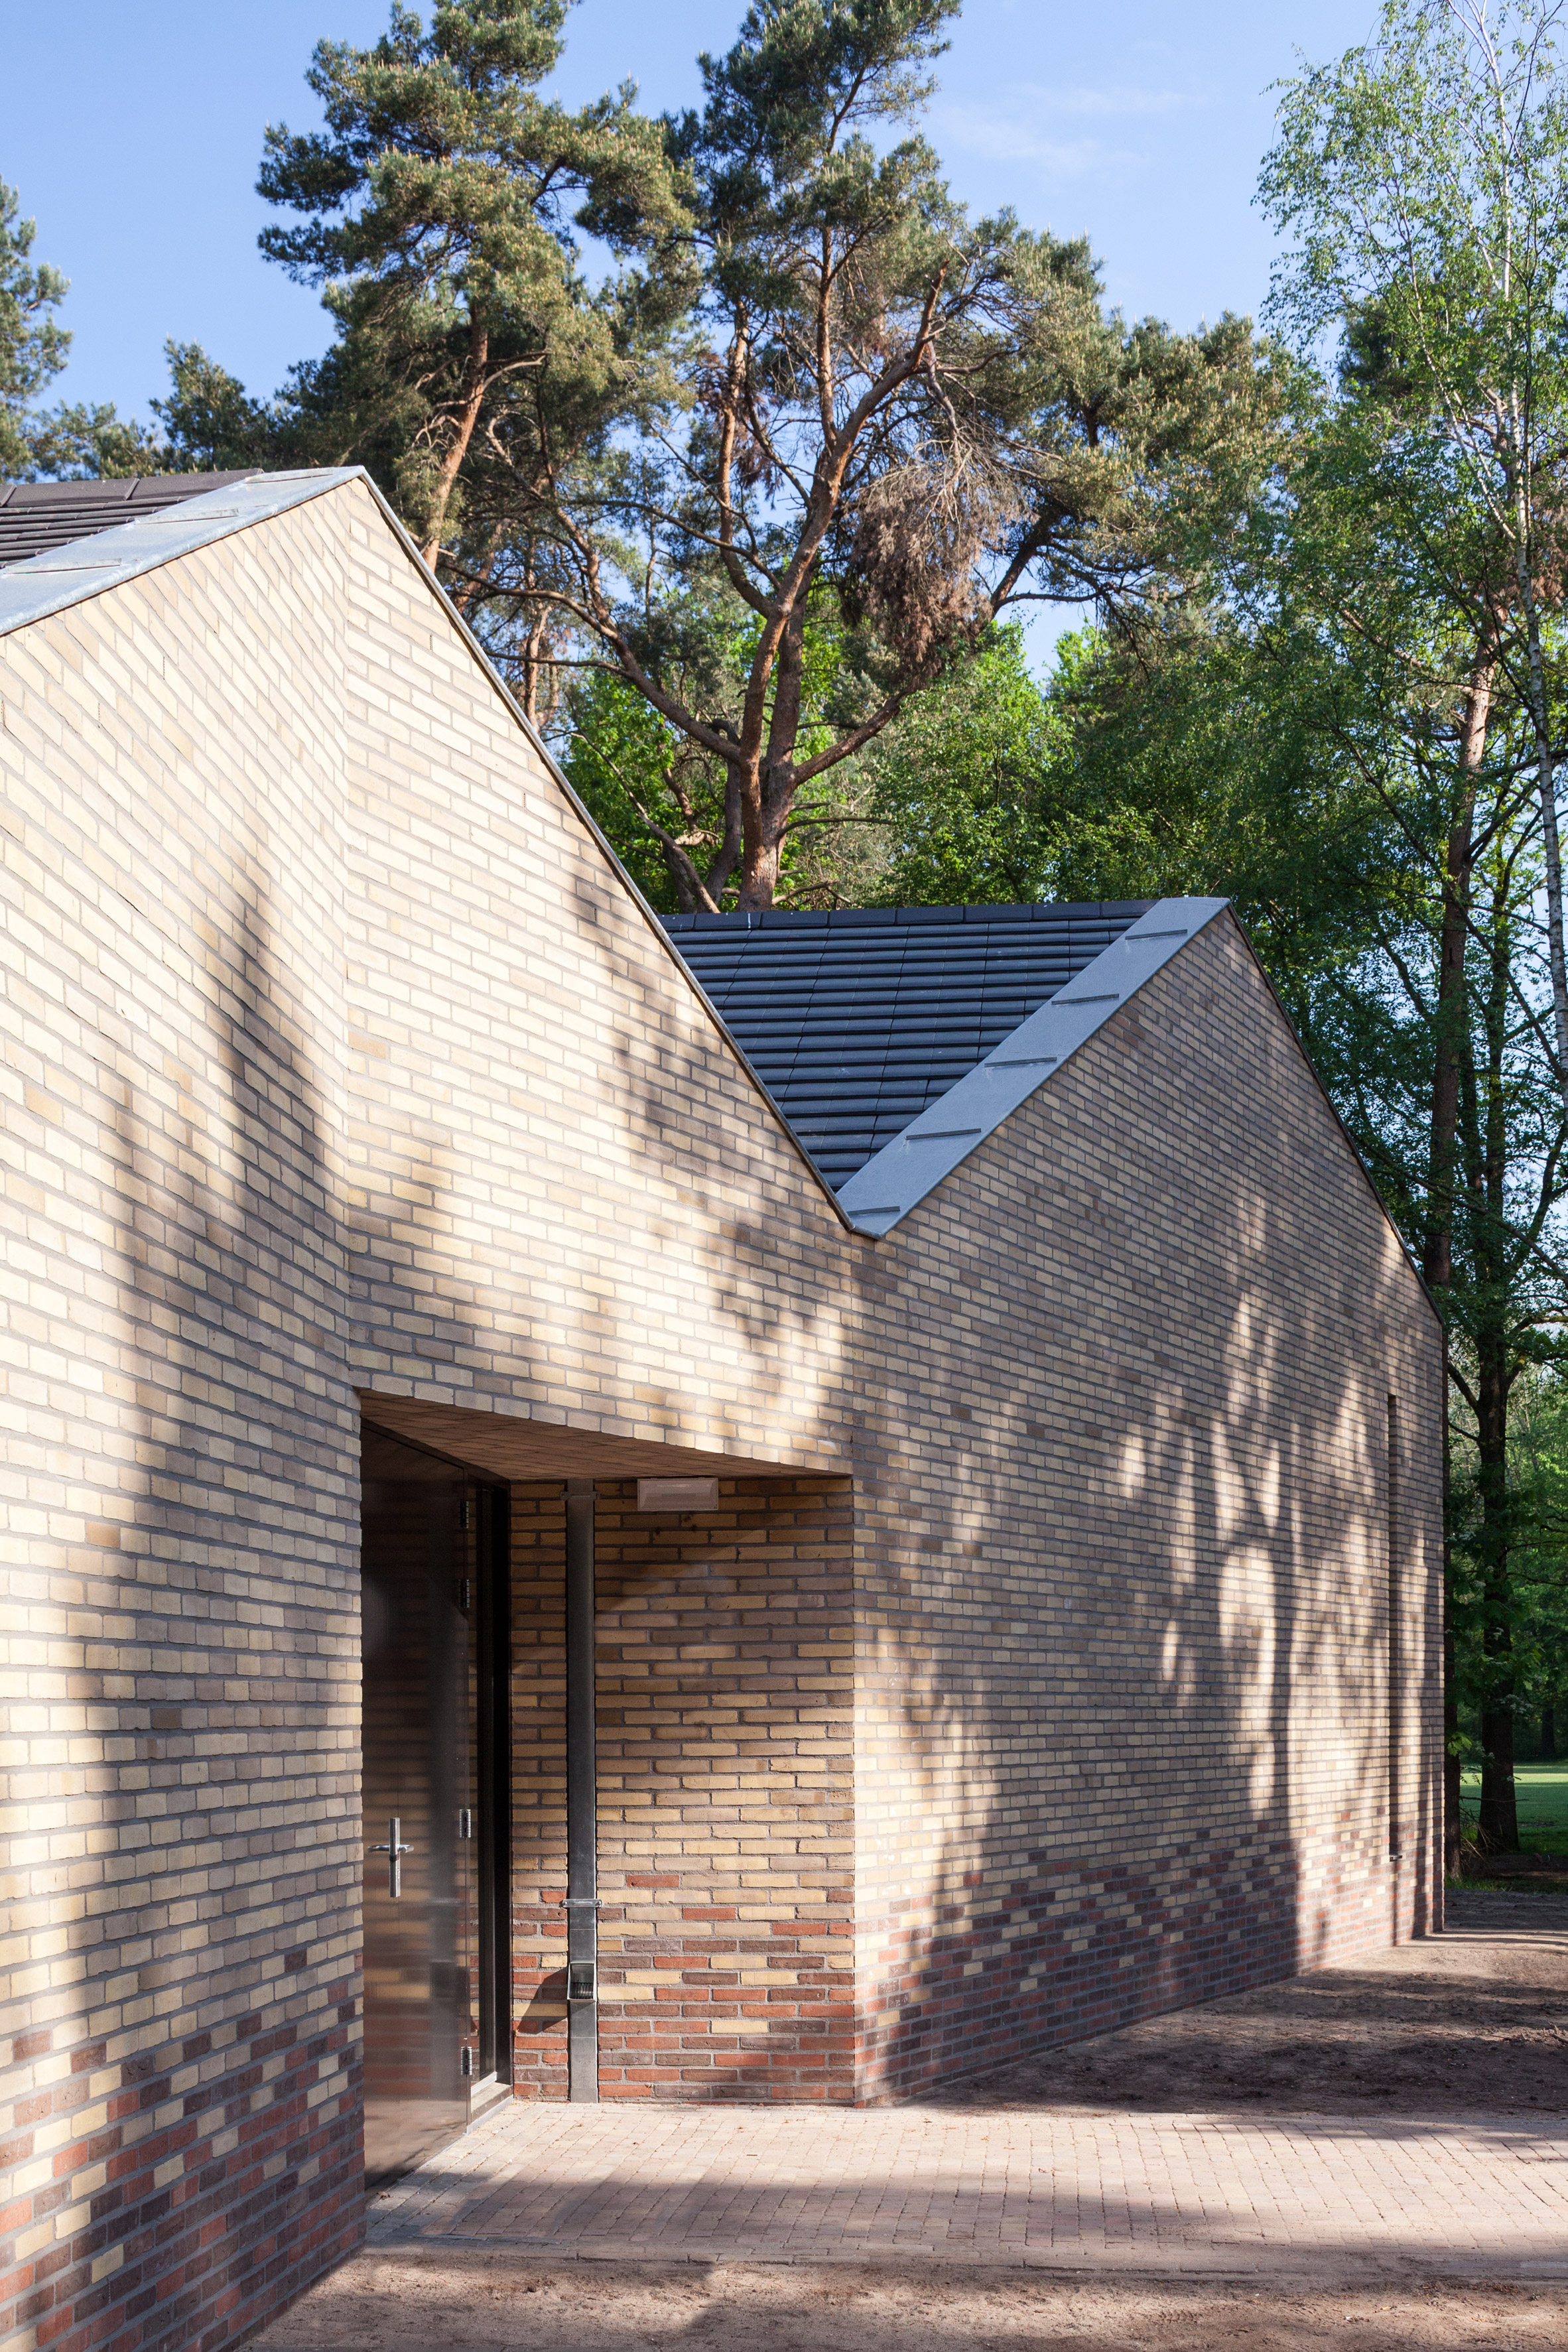 reseta-zonnewende-theatre-hall-architecture-brick-netherlands_dezeen_2364_col_9